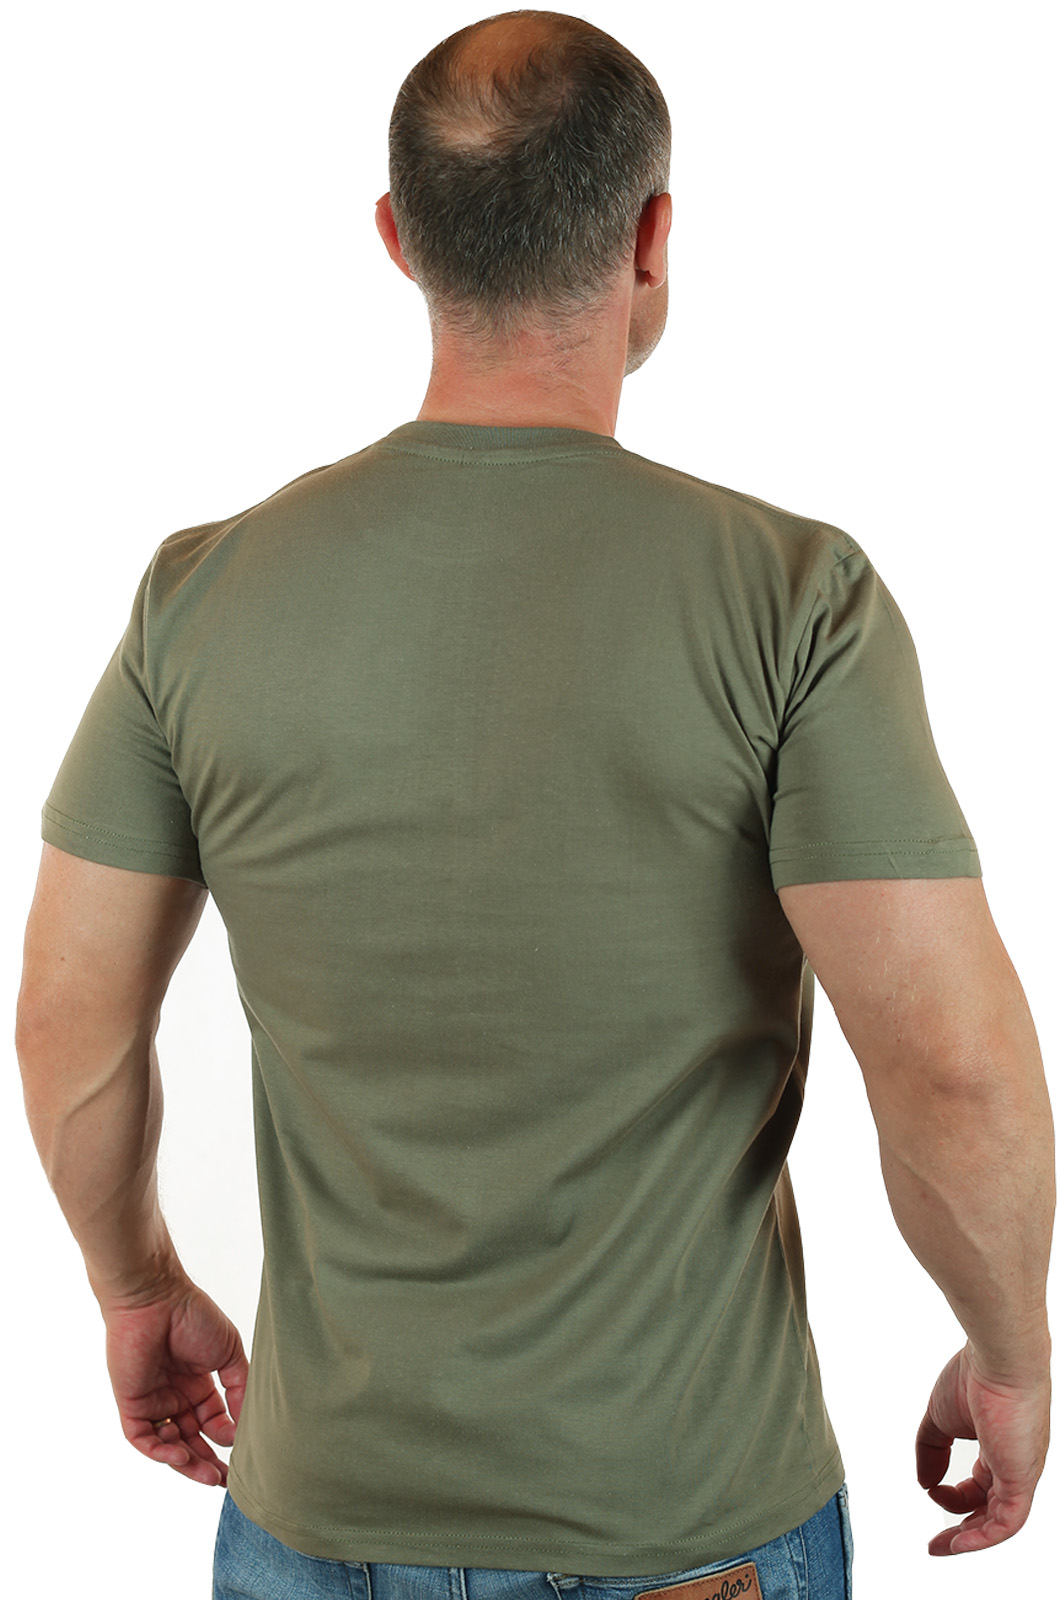 Военные мужские футболки по цене производителя